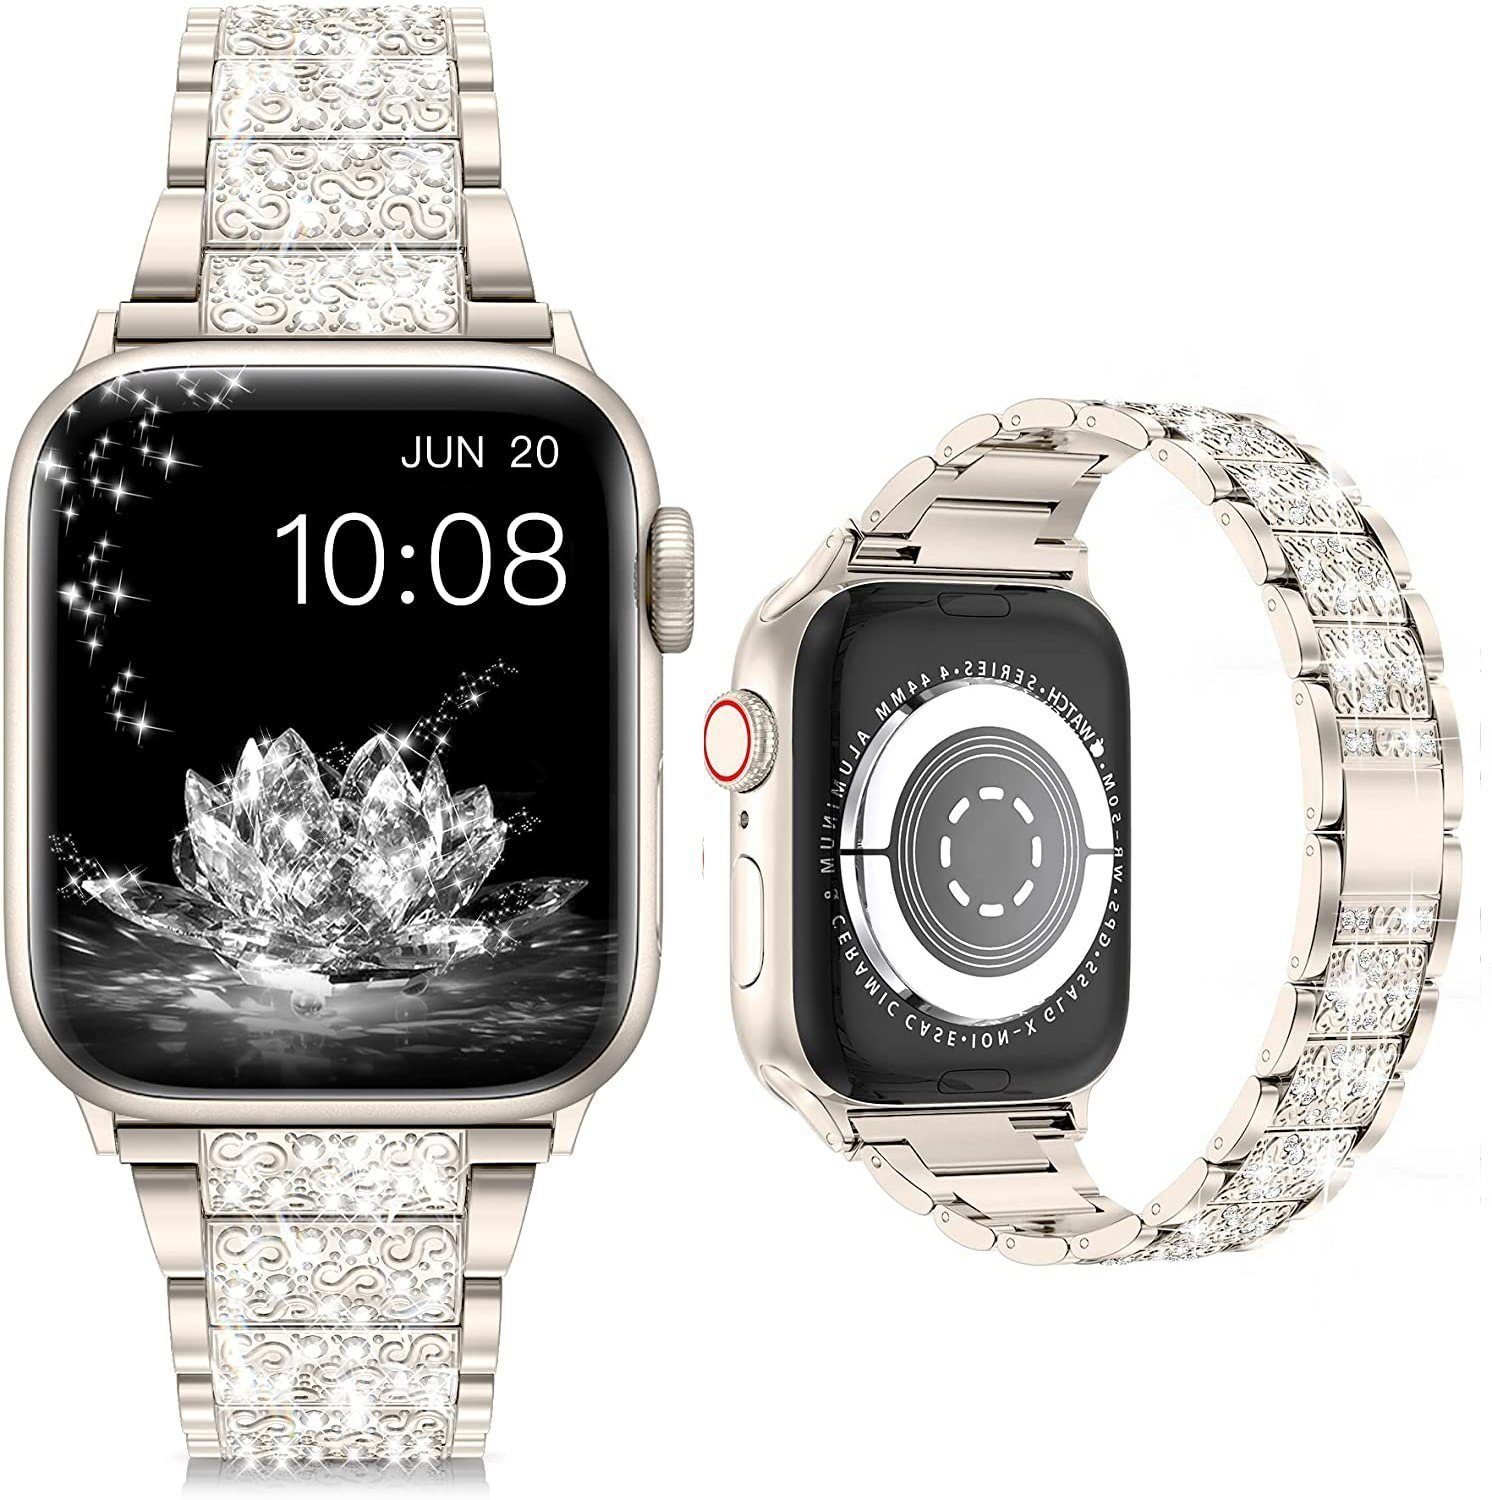 mm-45 Sternenlicht Für Watch mm,42 Serie ELEKIN mm-38 mm 7654321 Smartwatch-Armband Apple Armband,41